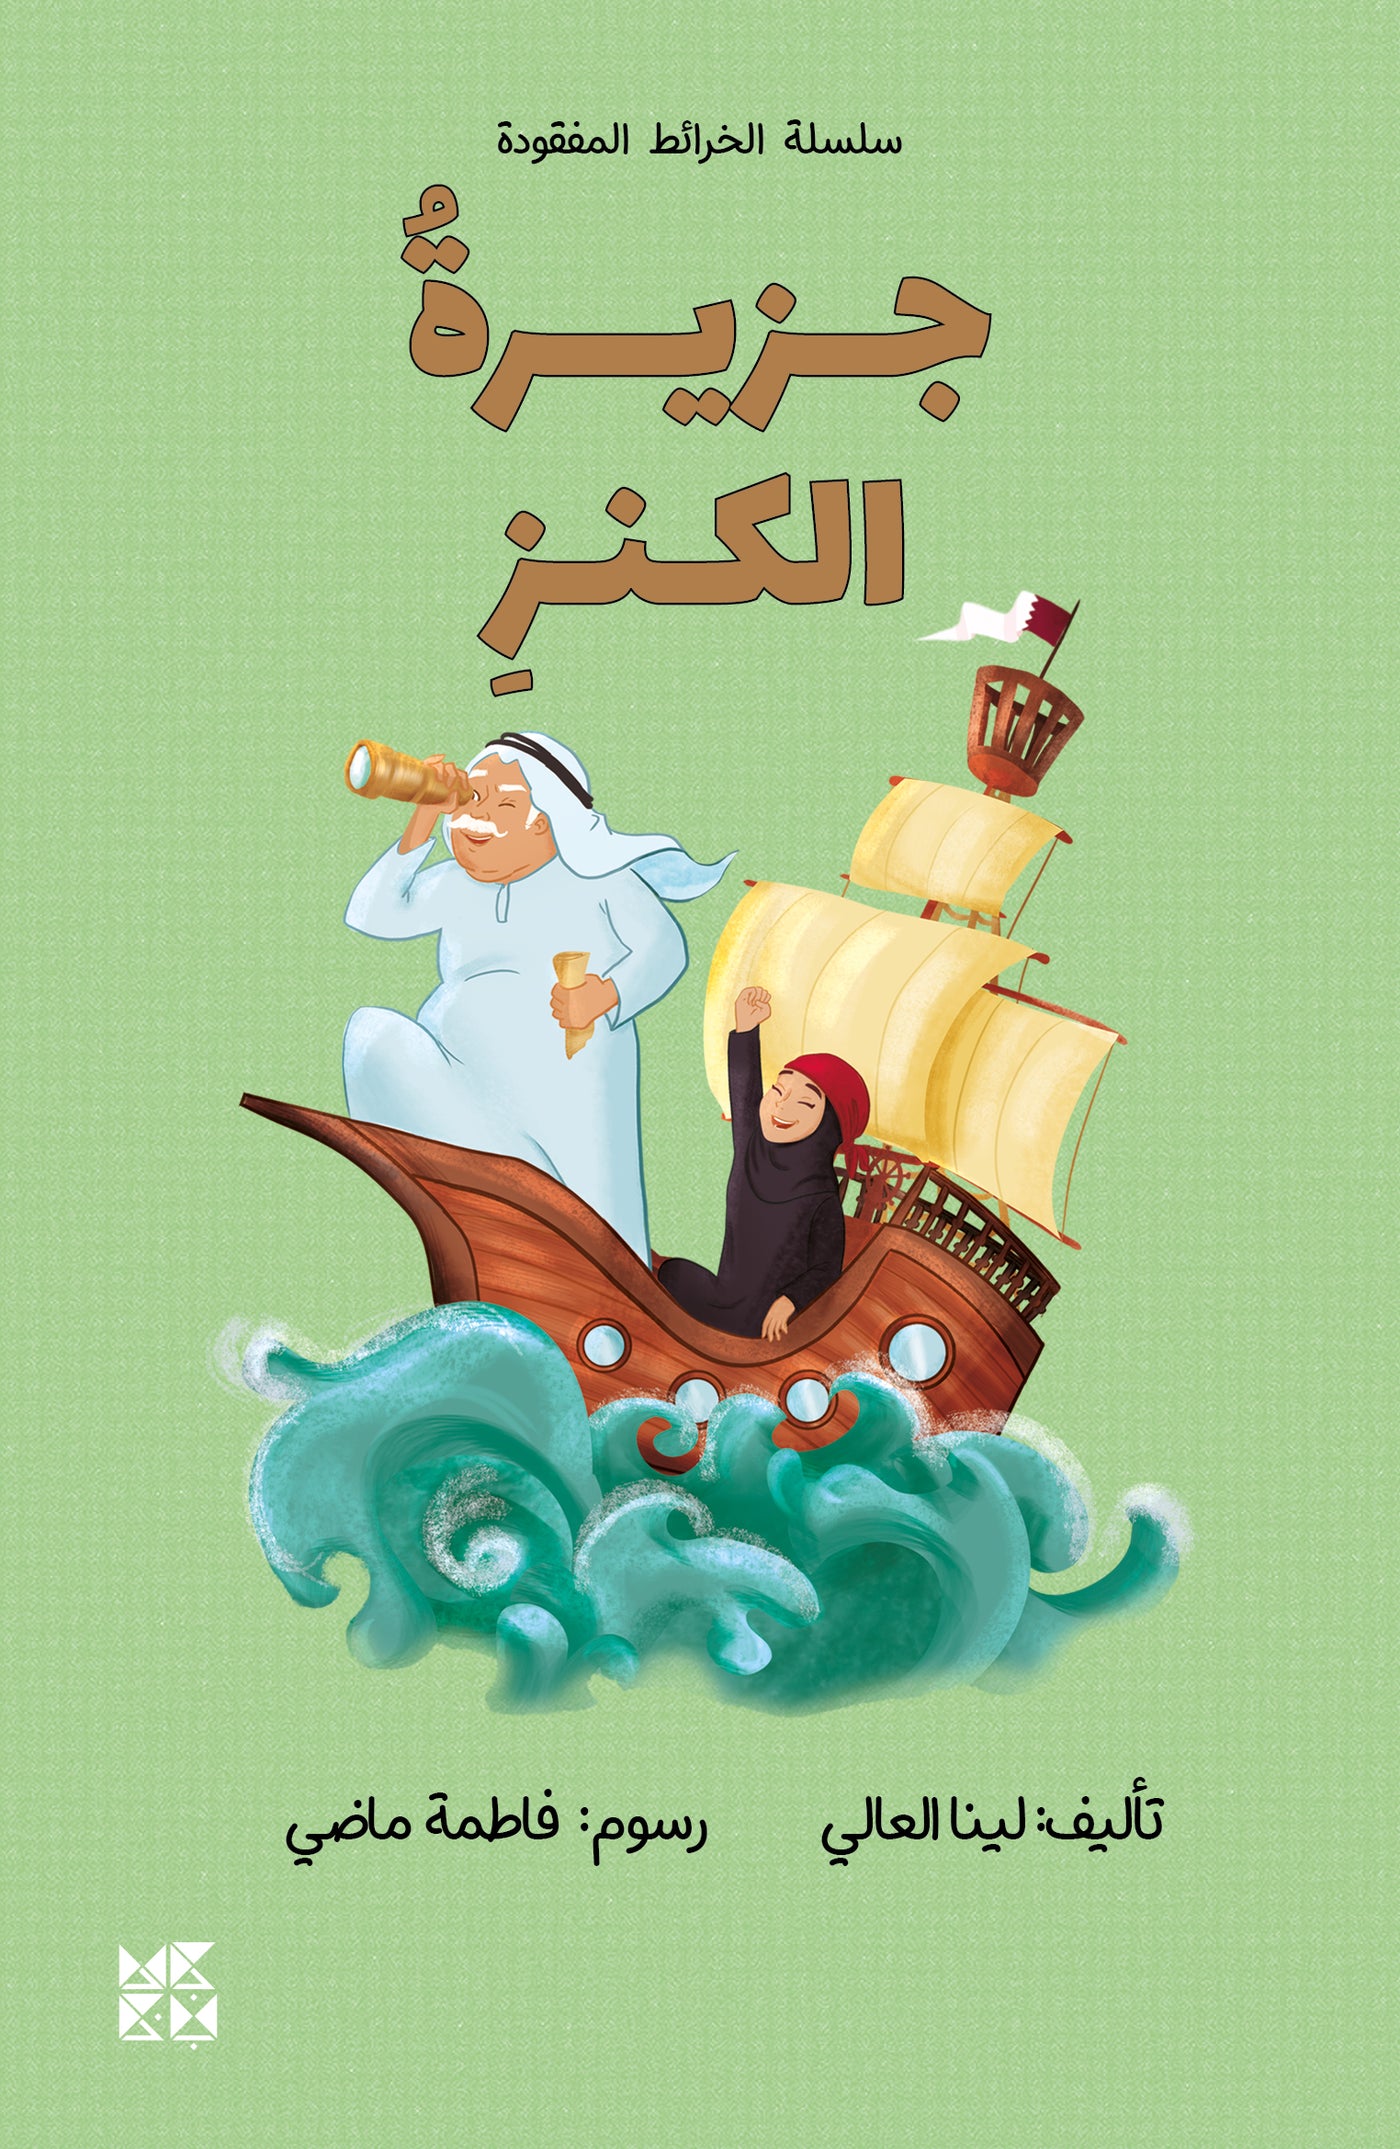 Treasure Island Book Cover